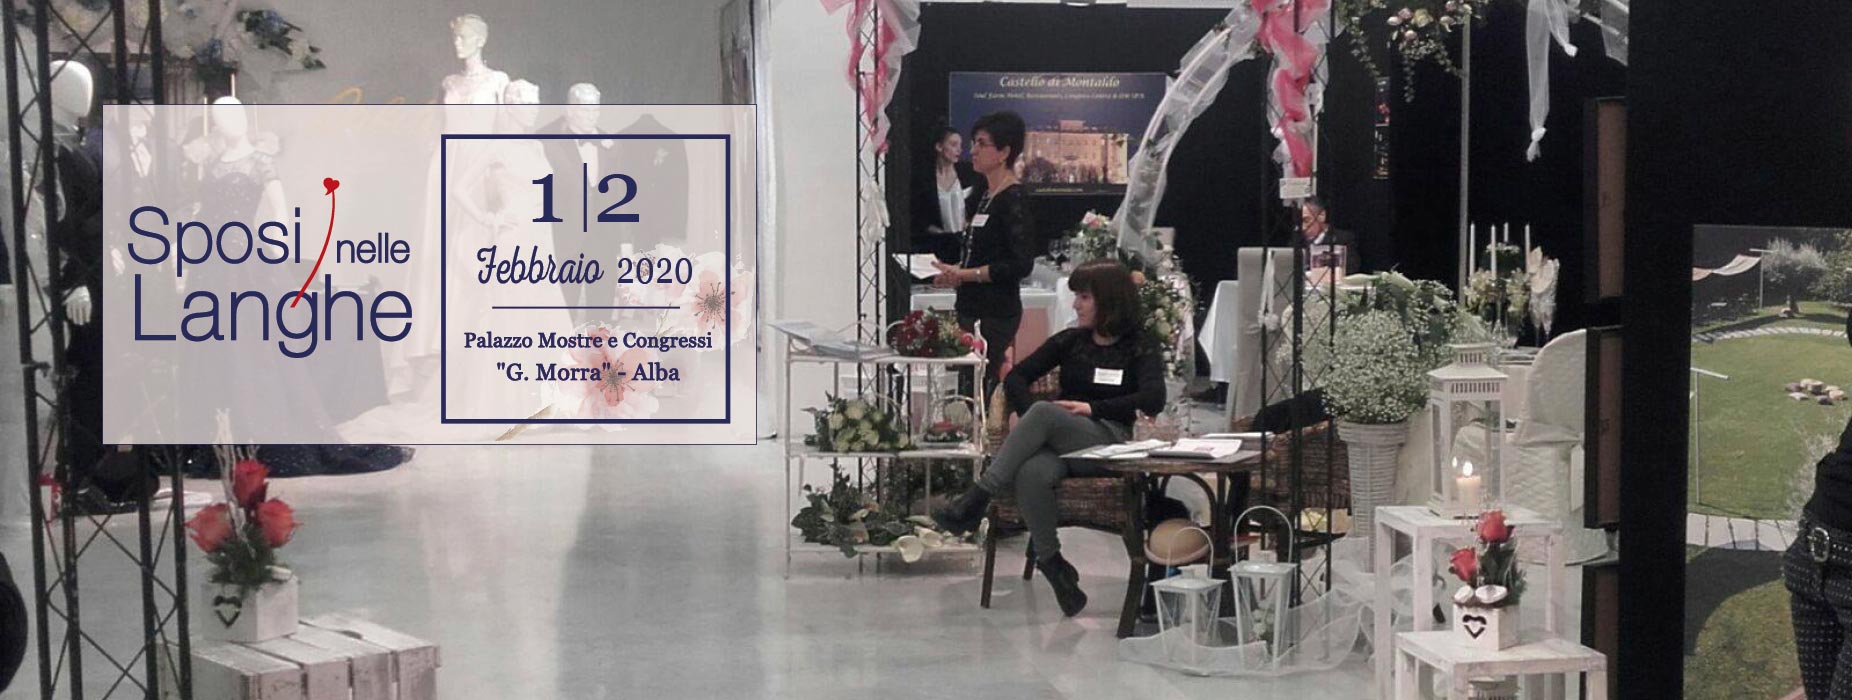 Sposi nelle Langhe - 1 e 2 febbraio 2020 - Palazzo Mostre e Congressi G. Morra, Alba (CN)